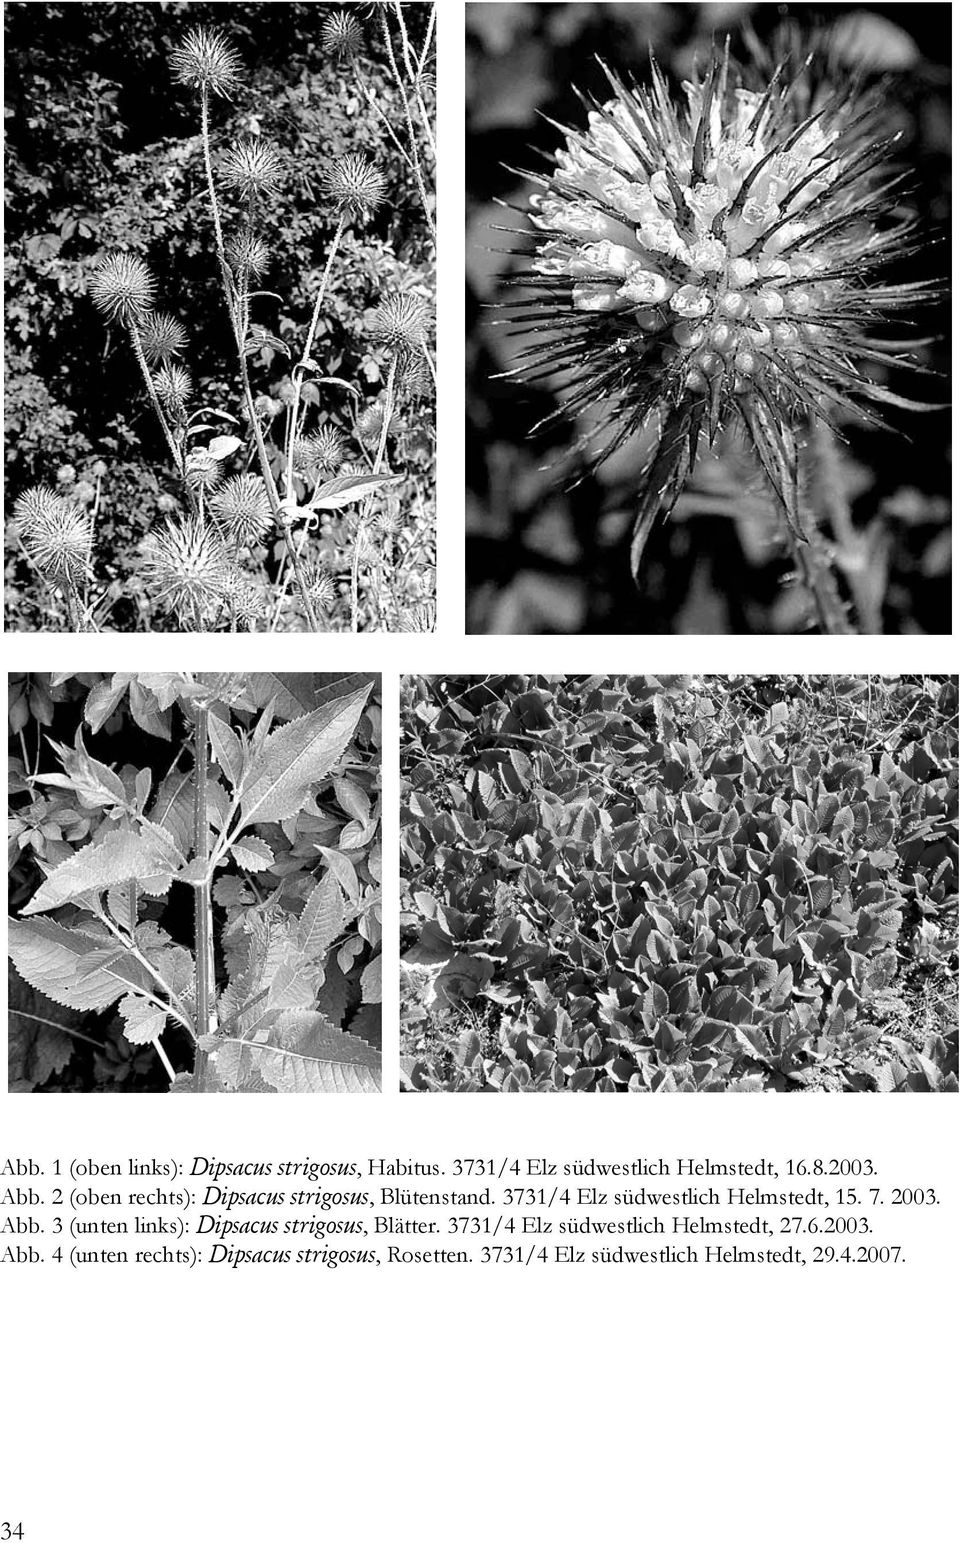 Abb. 3 (unten links): Dipsacus strigosus, Blätter. 3731/4 Elz südwestlich Helmstedt, 27.6.2003.